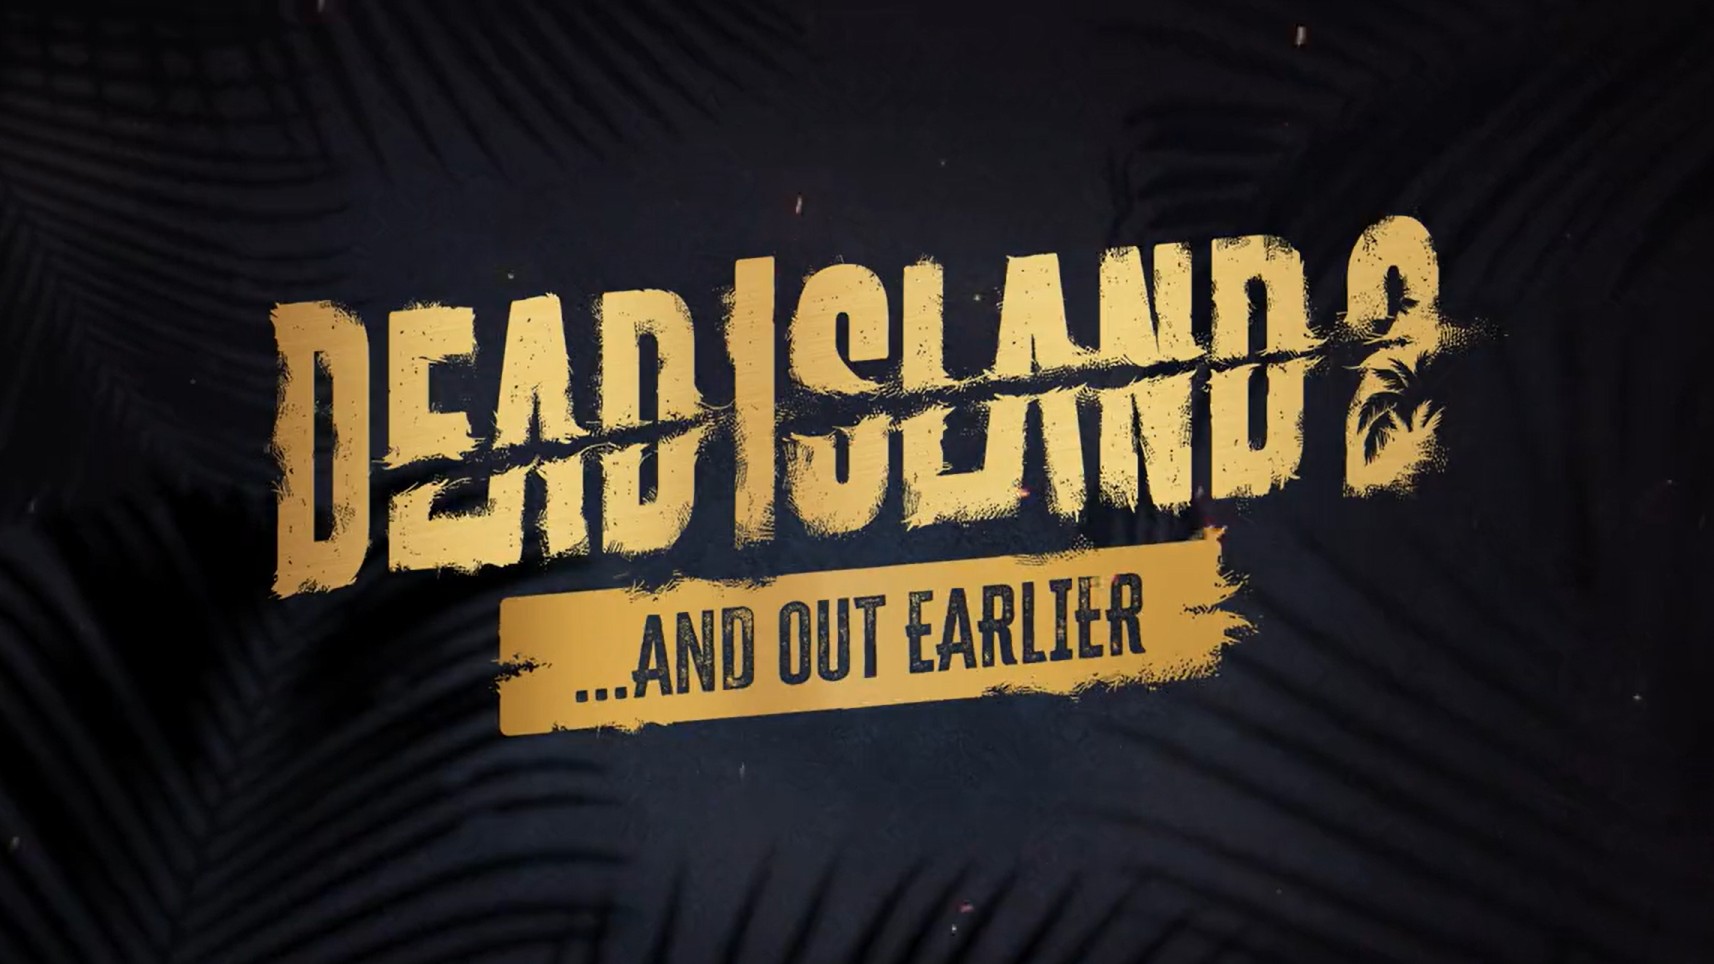 dead island 2 release date jan 3 2020